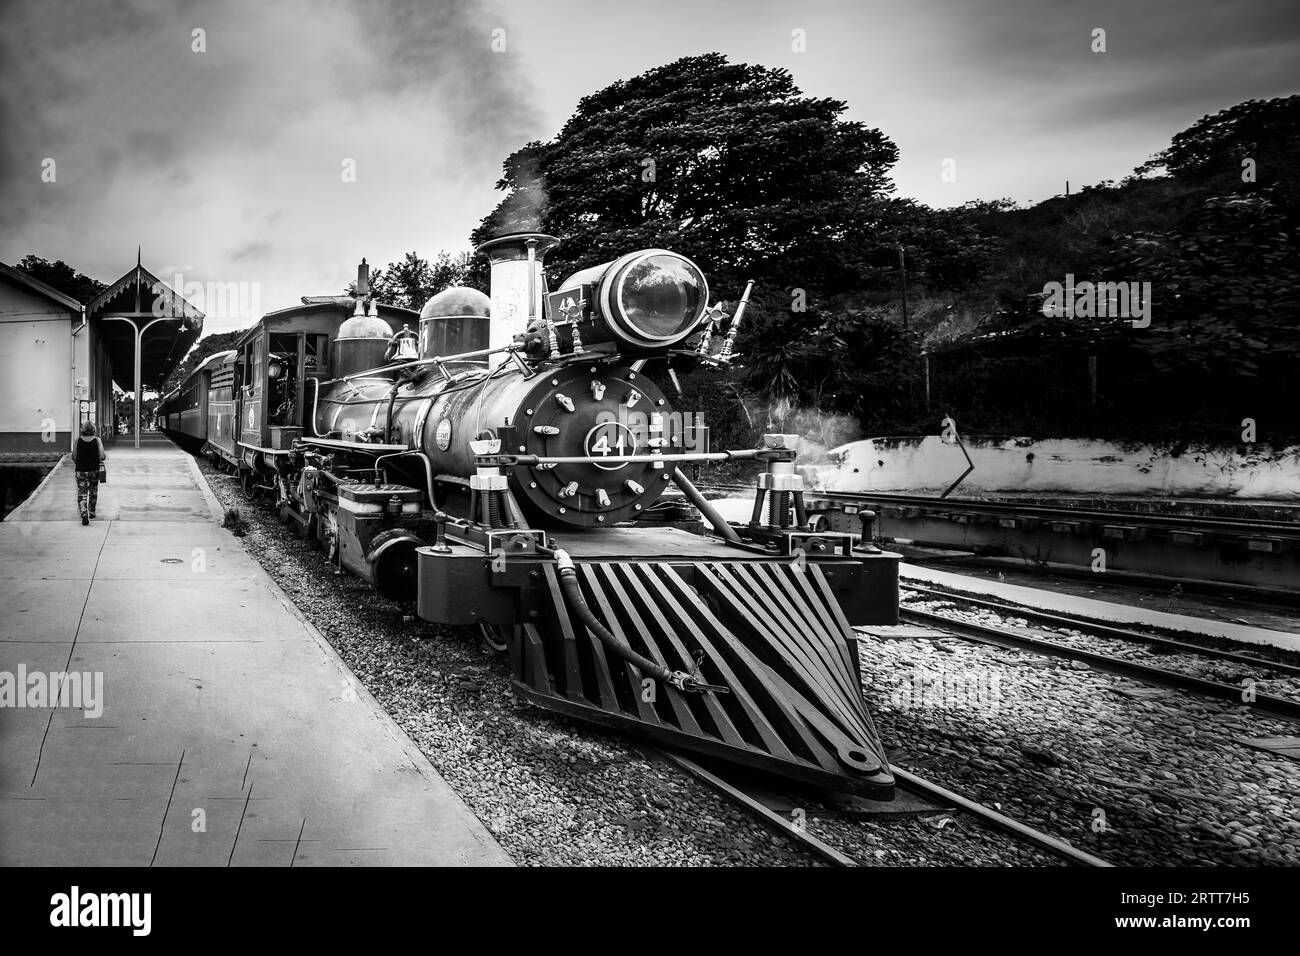 Tiradentes, Brasile, 30 dicembre 2015: Treno Old May Smoke a Tiradentes, una città coloniale patrimonio dell'umanità dell'UNESCO Foto Stock